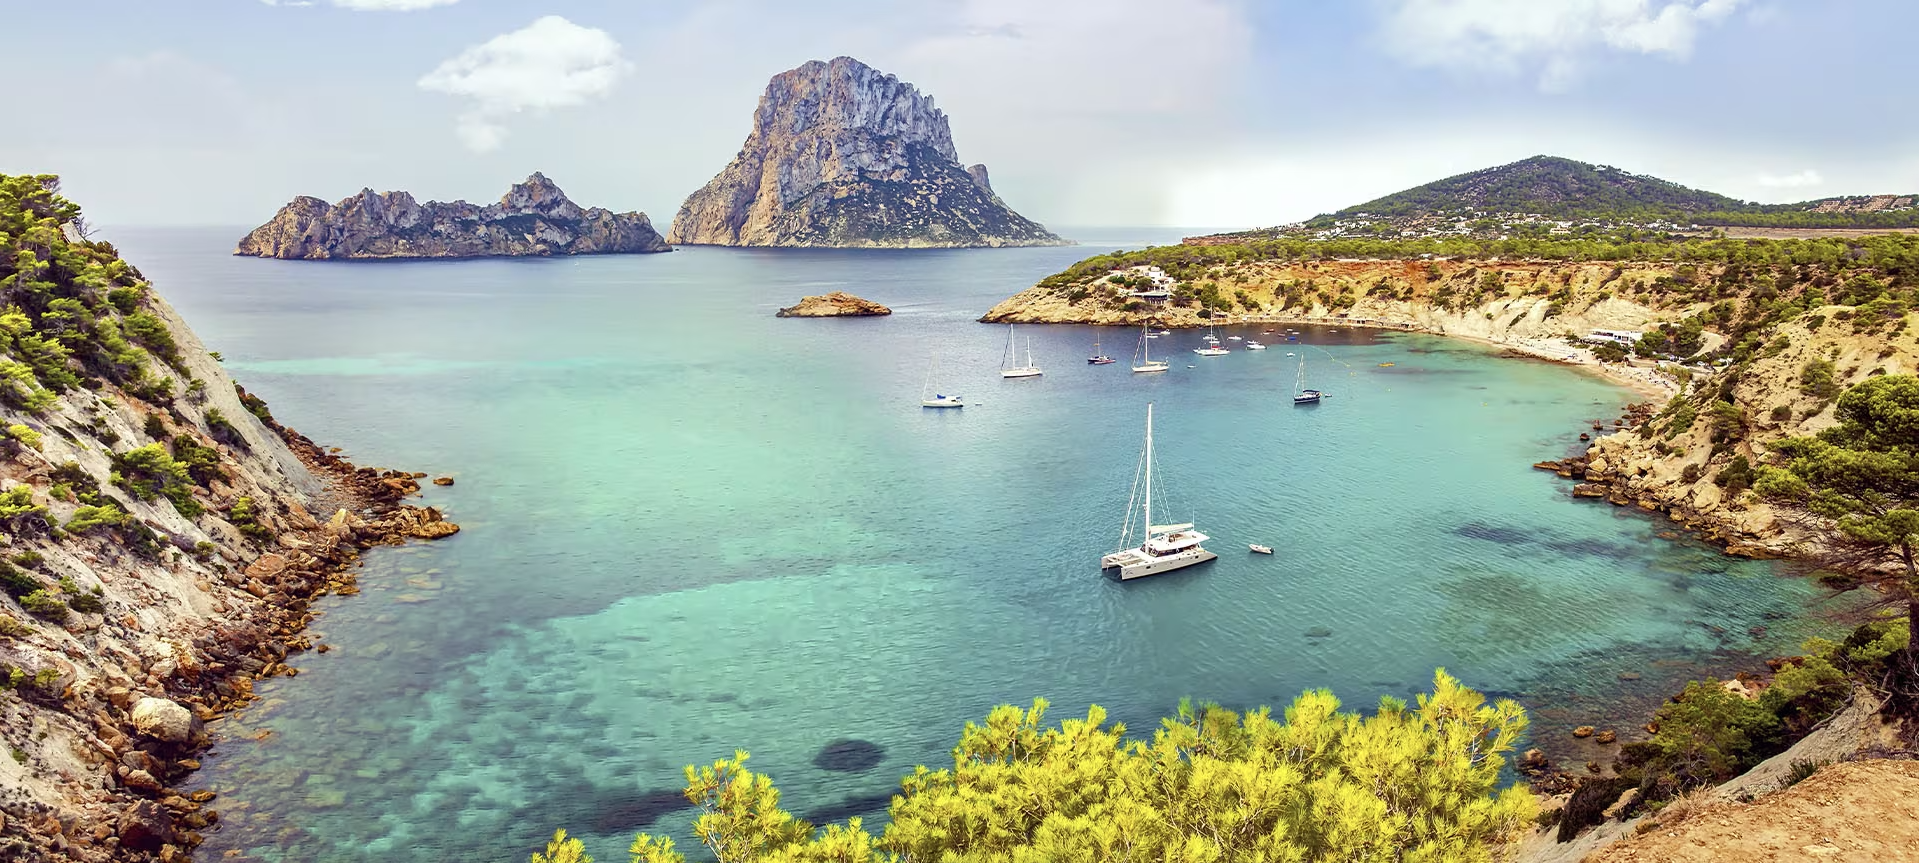 Navega una semana en Ibiza y Formentera